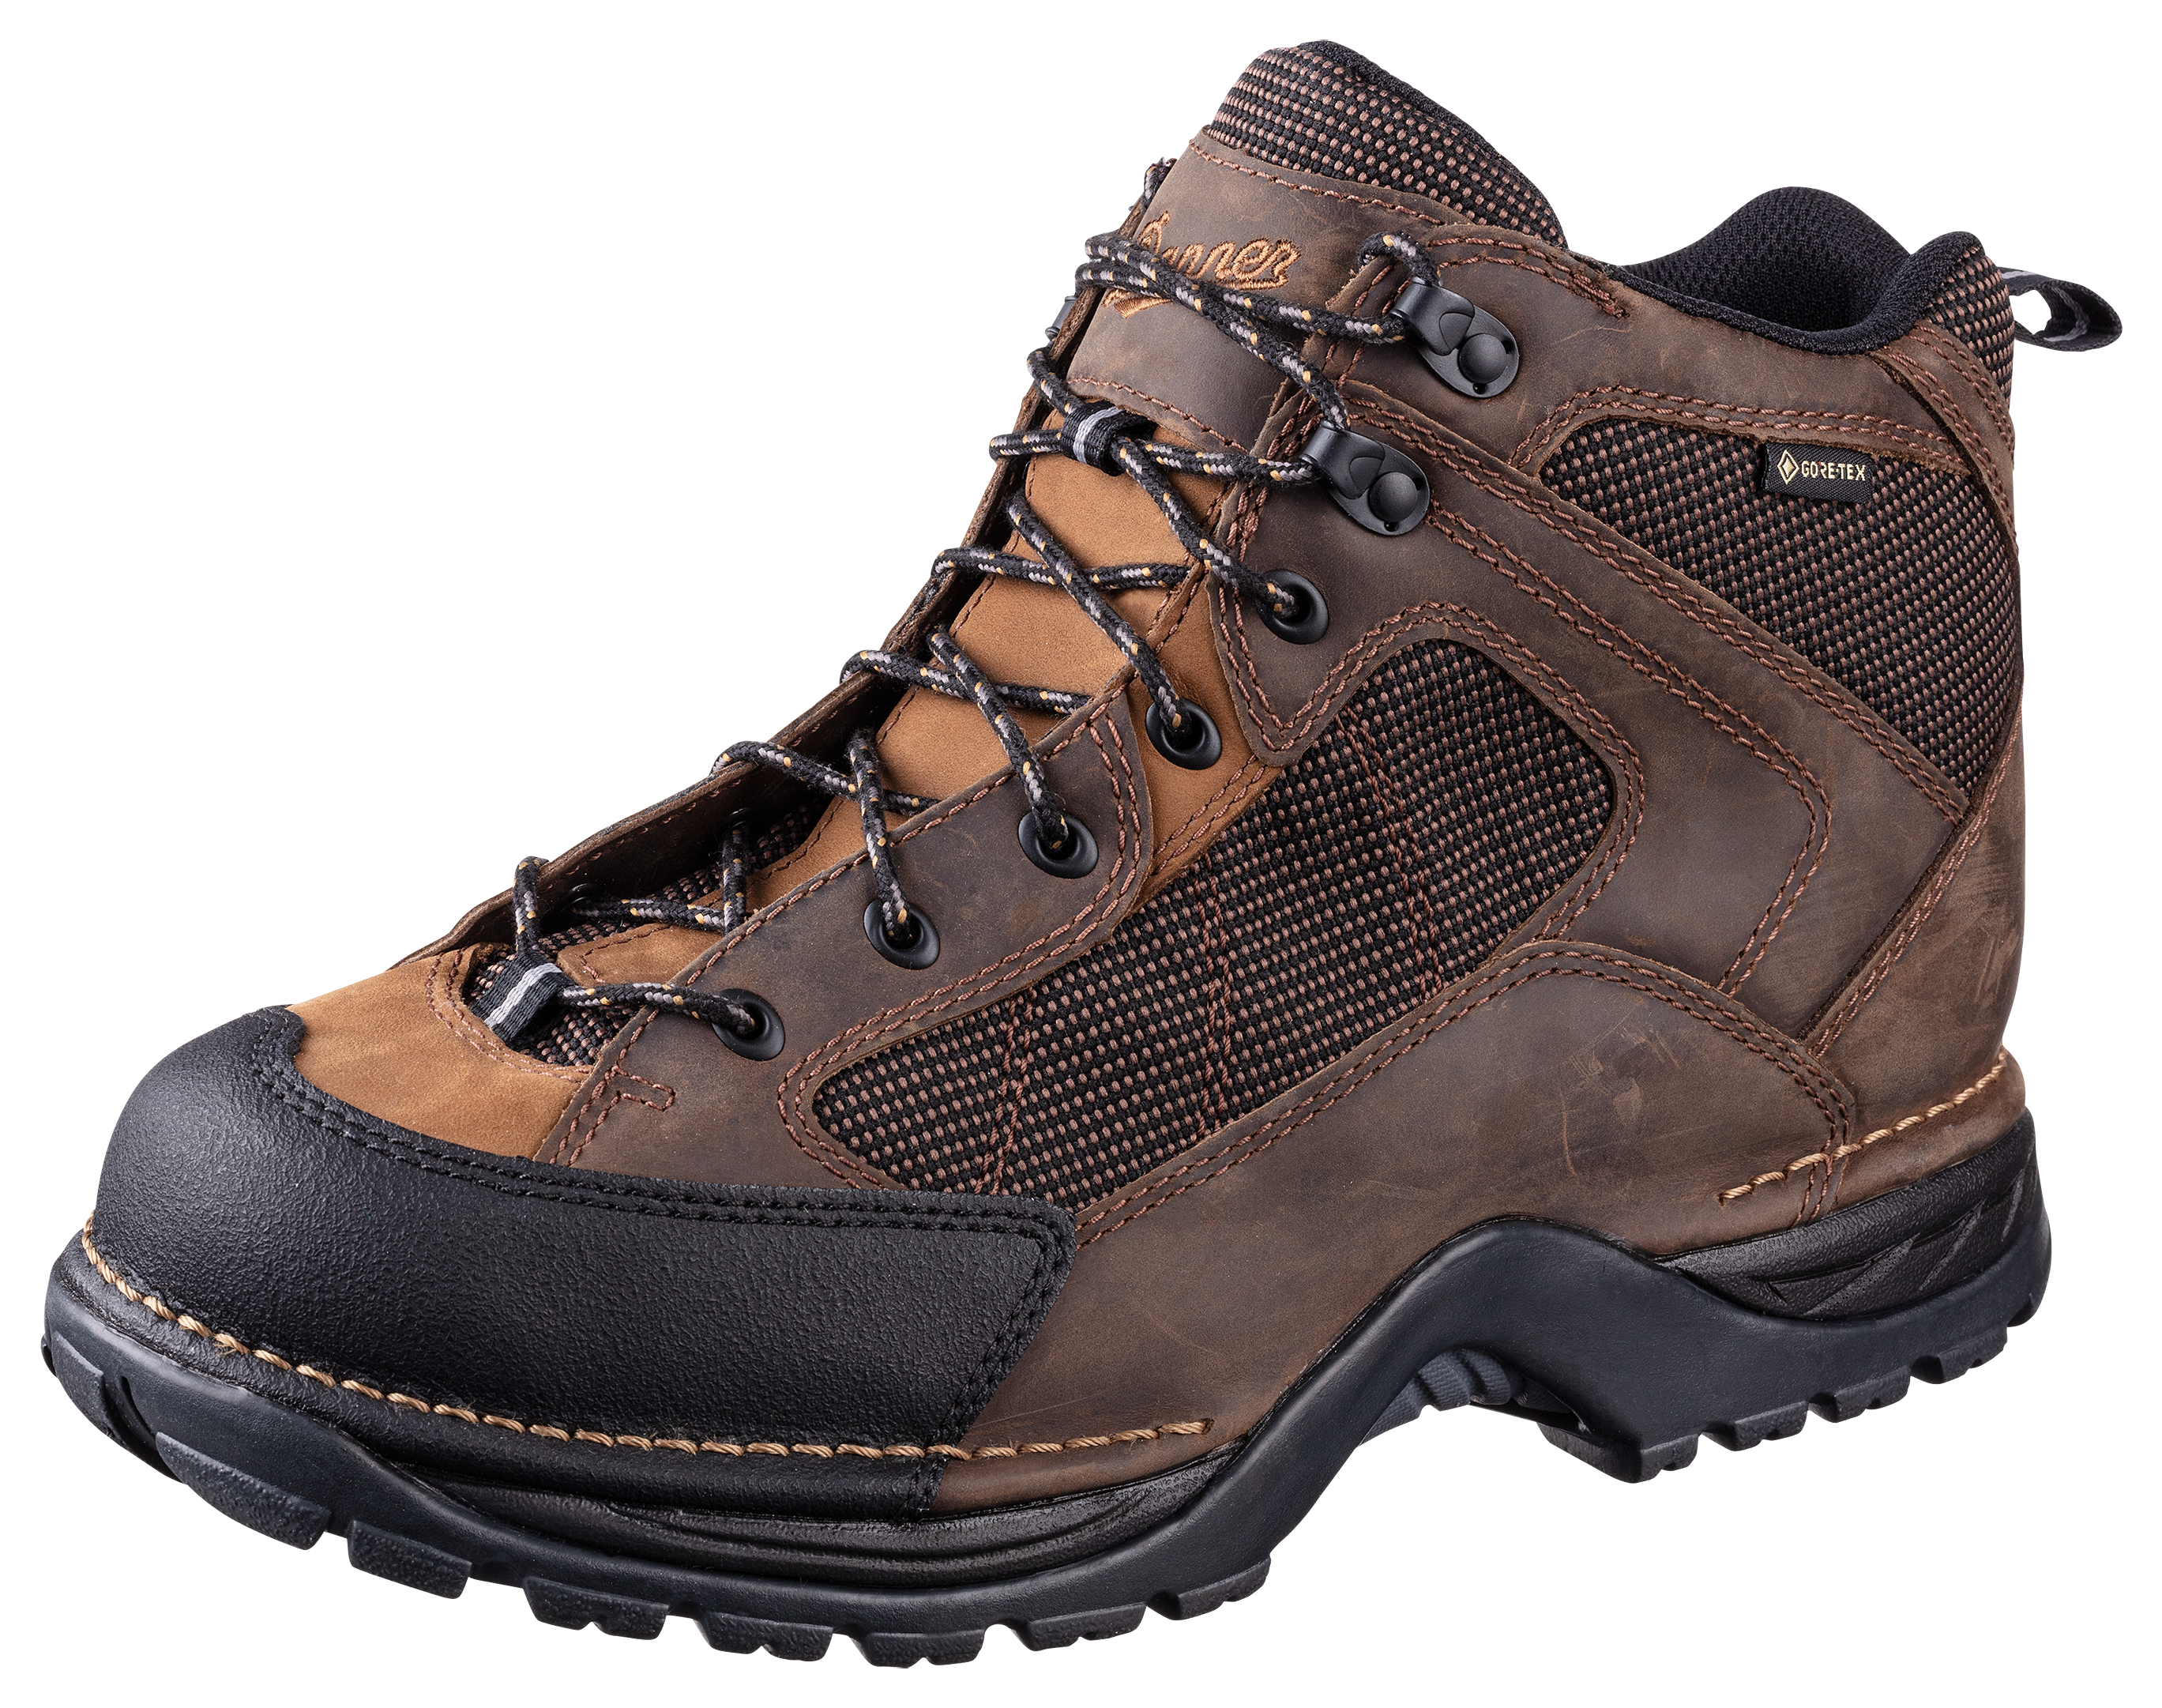 Danner Radical 452 GORE-TEX Hiking Boots for Men - Dark Brown - 7M